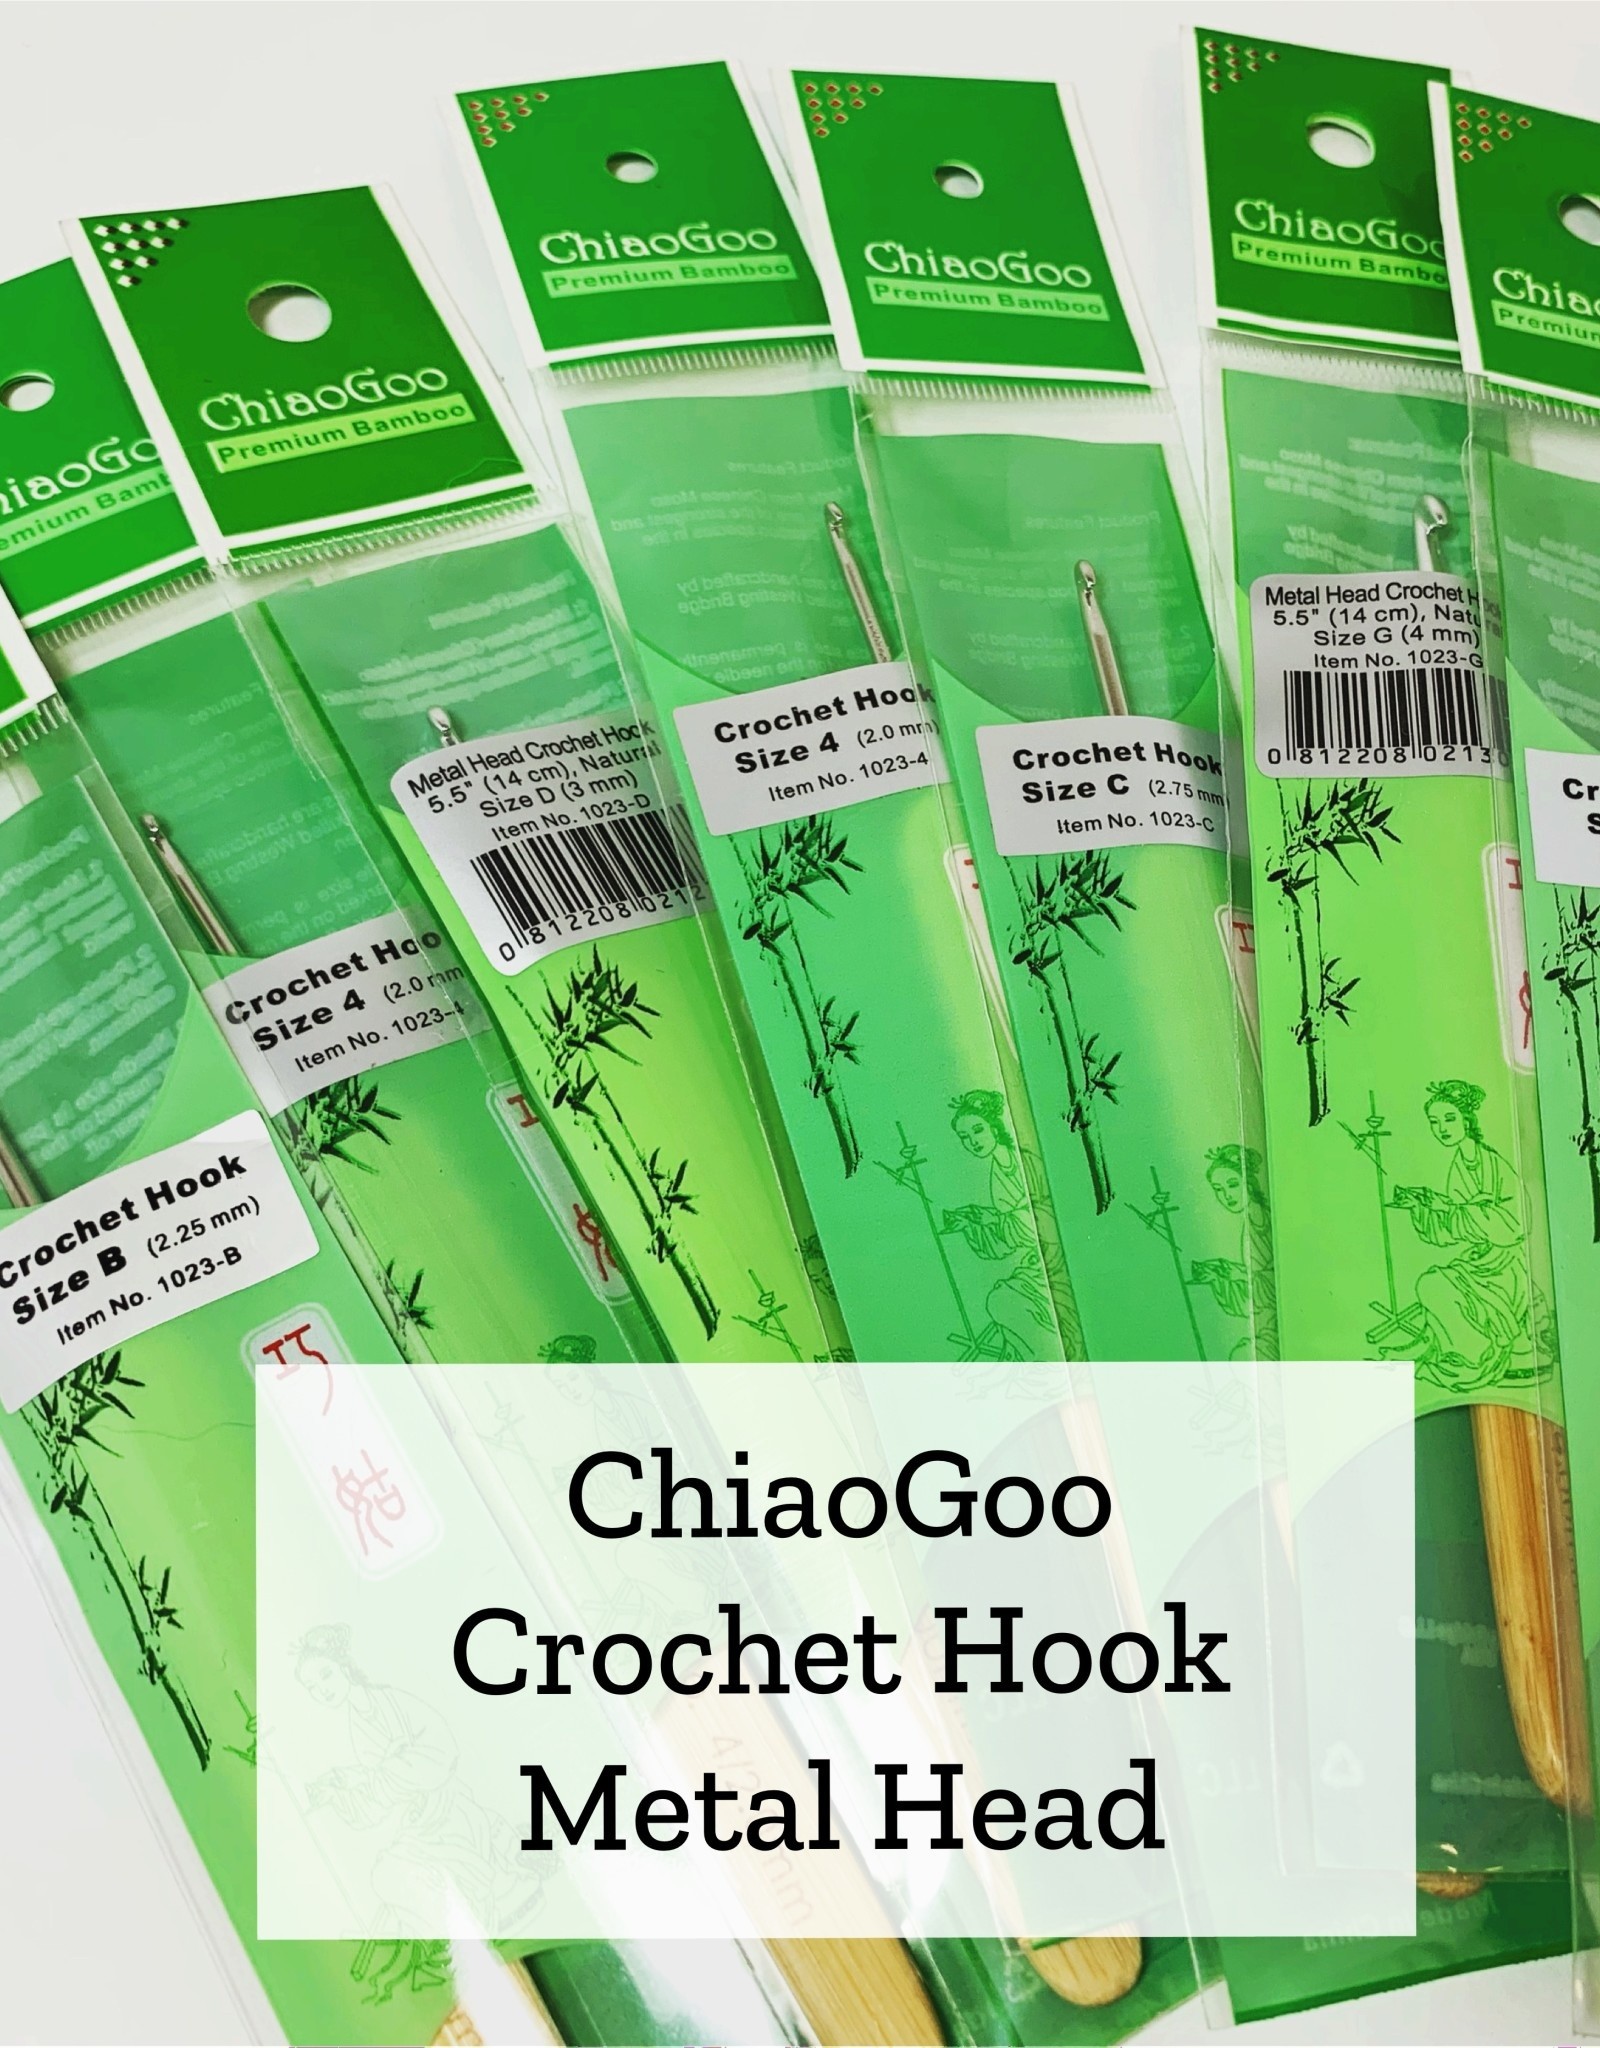 ChiaoGoo Metal Head Crochet - 2.5 mm